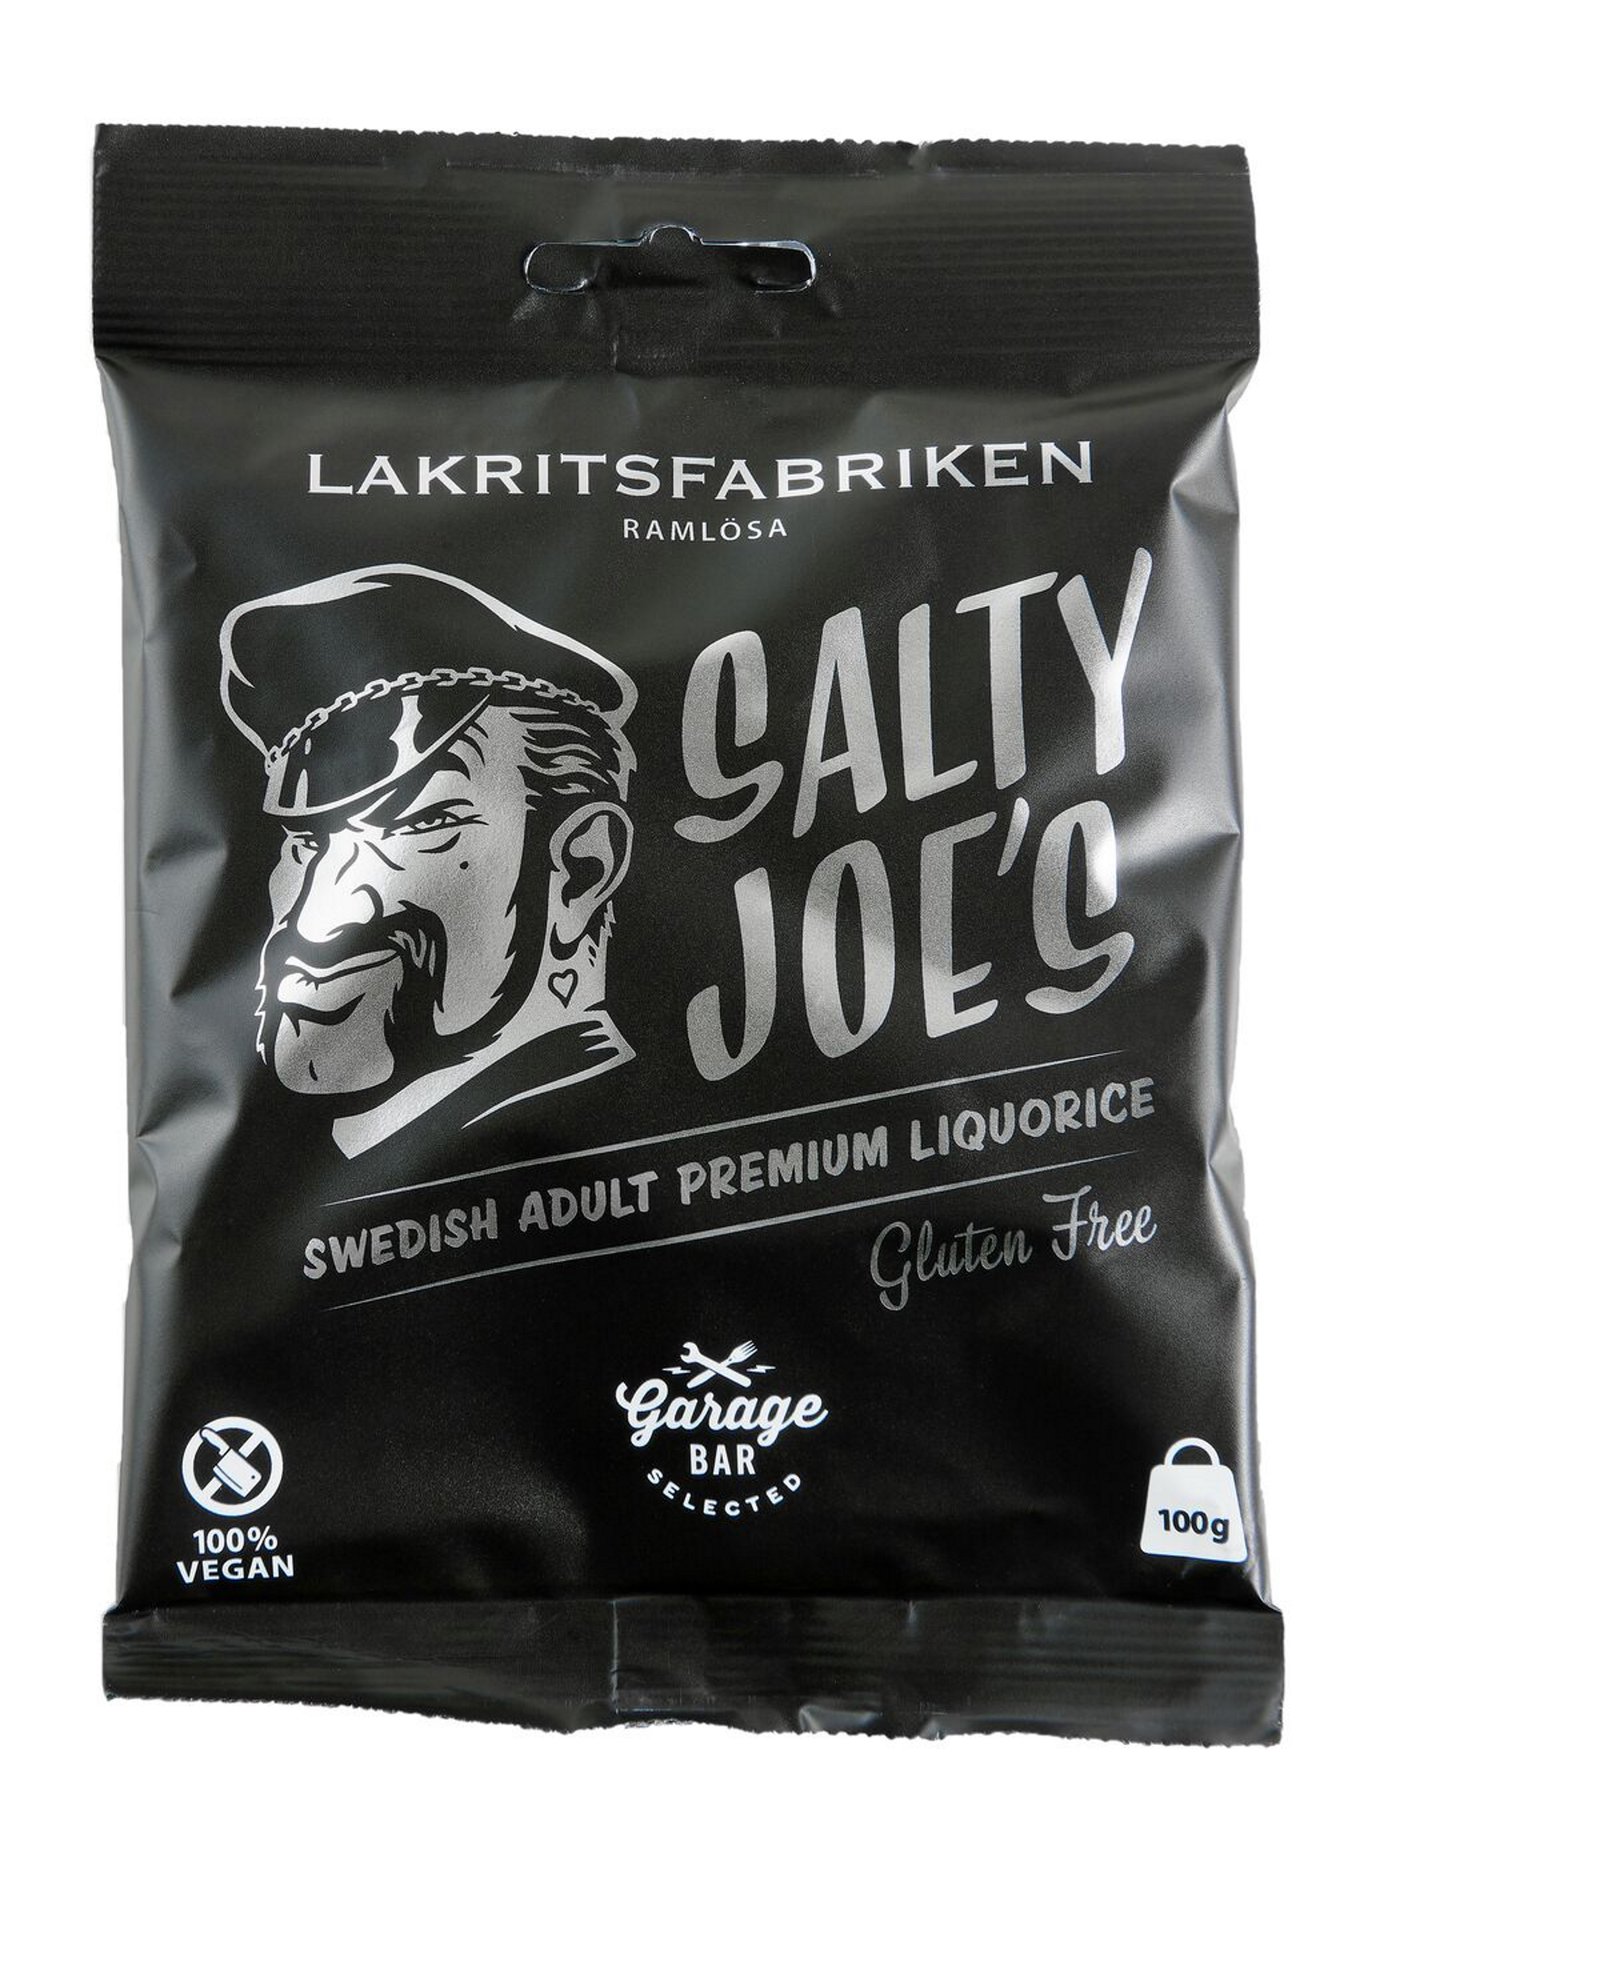 Lakritsfabriken Garage Bar Salty Joe's 100 g